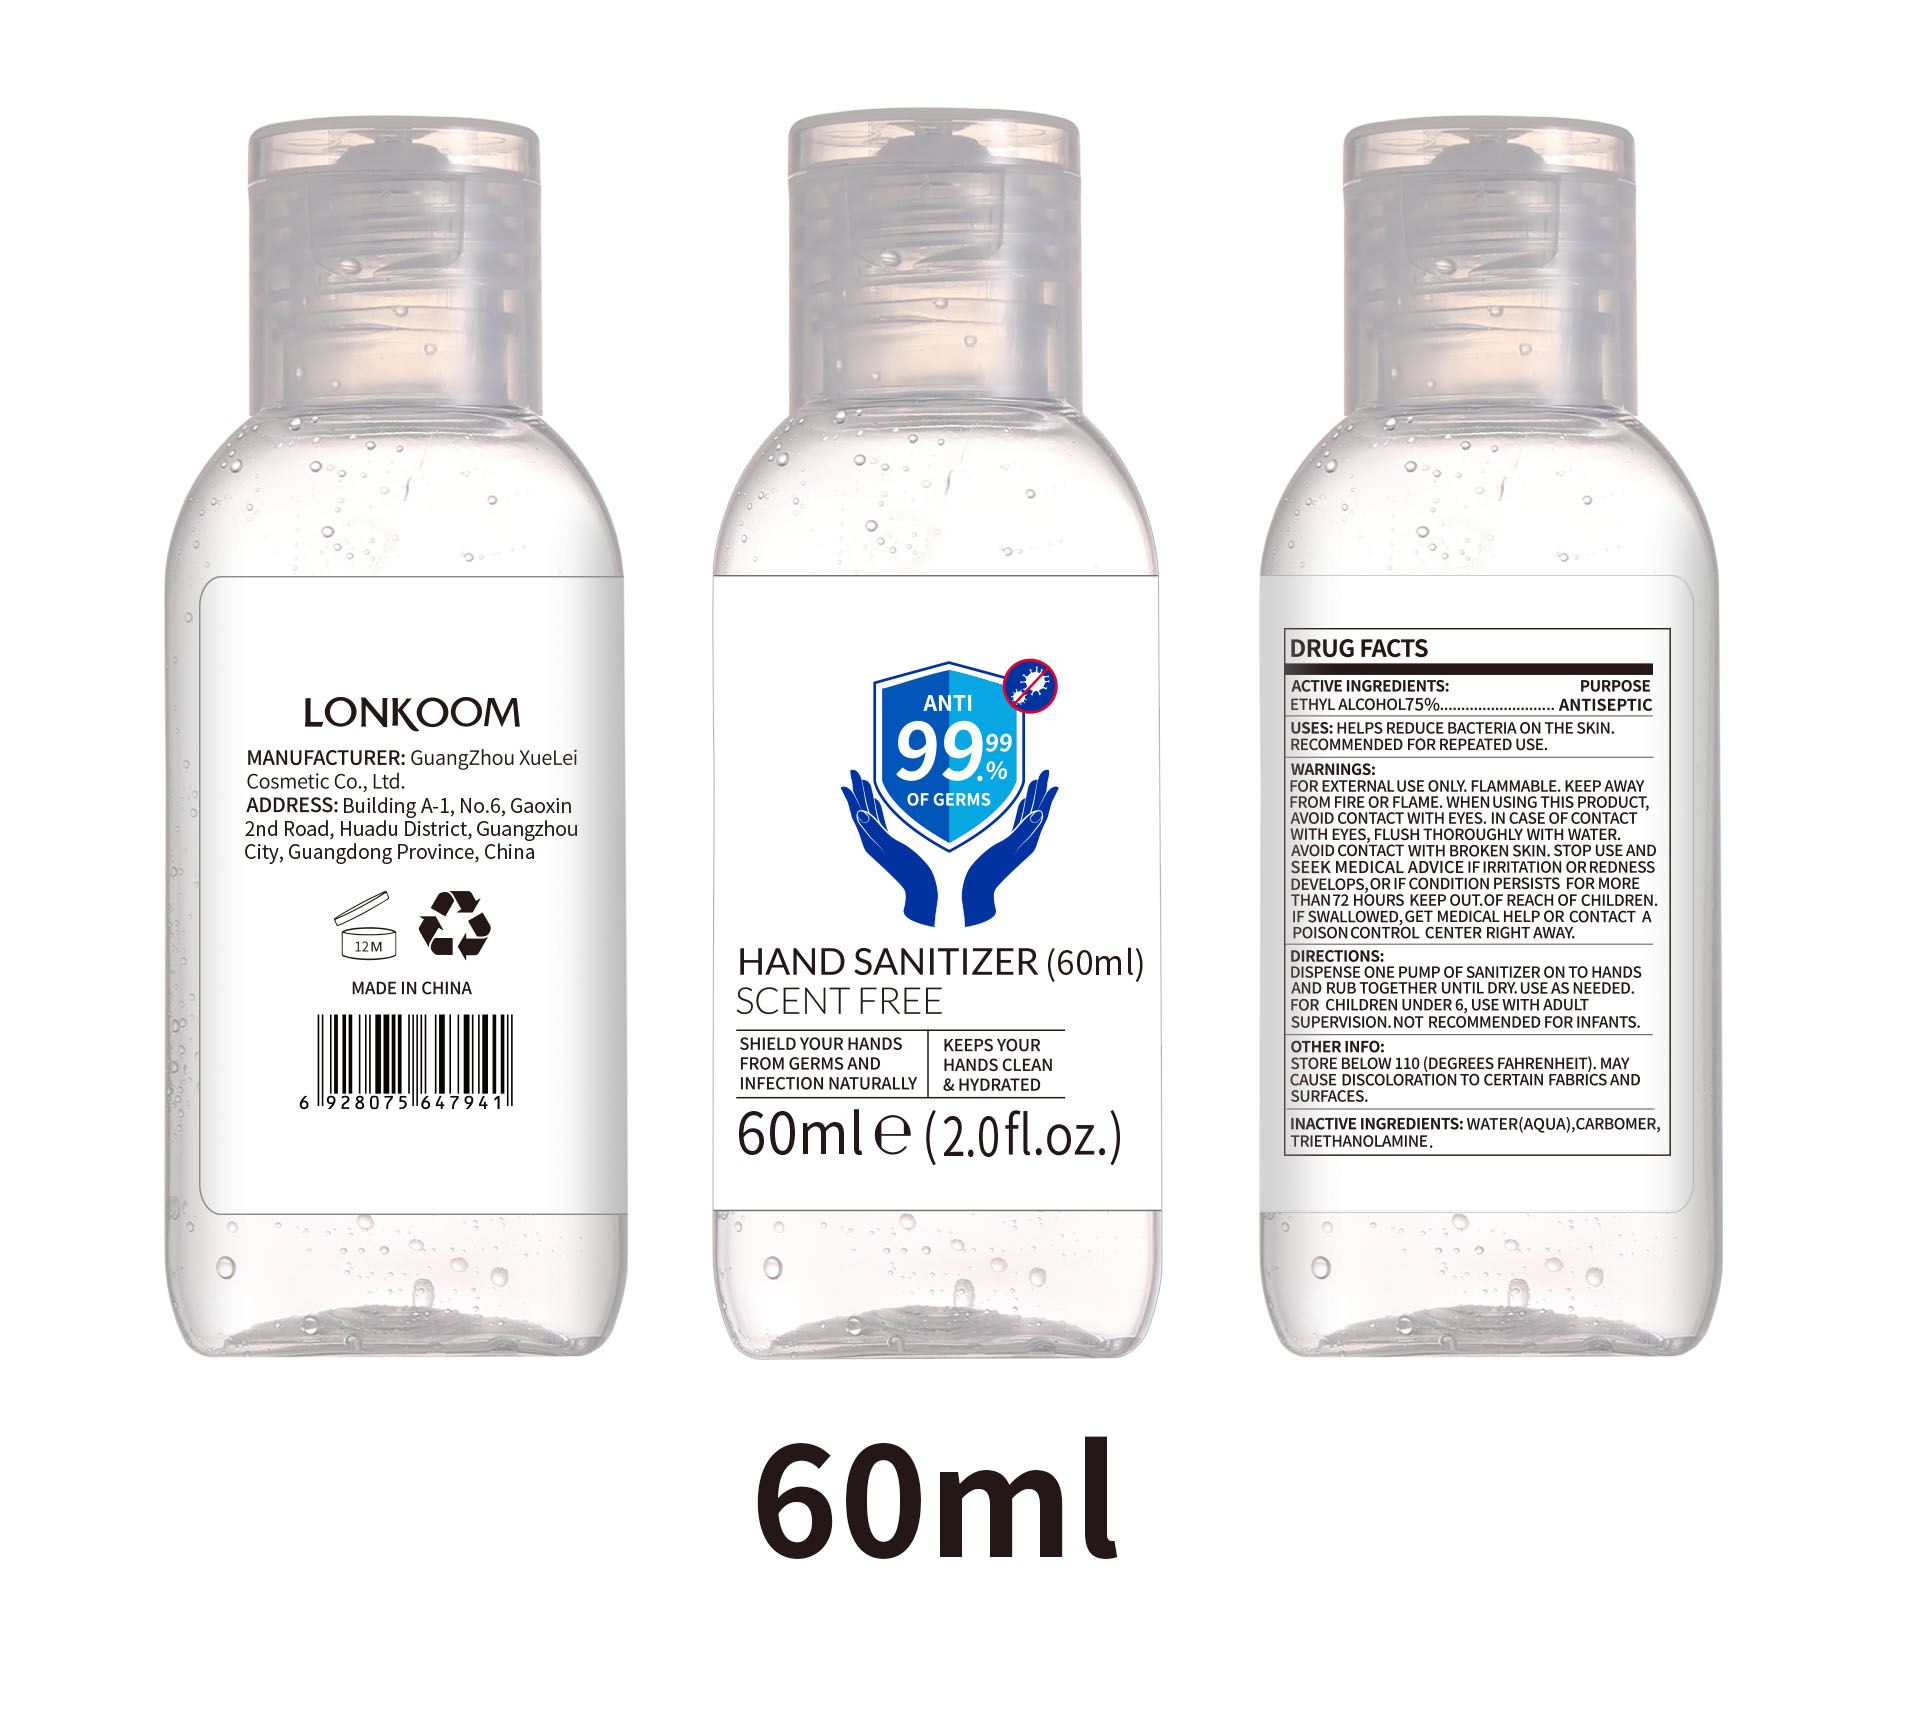 60ml bottle label